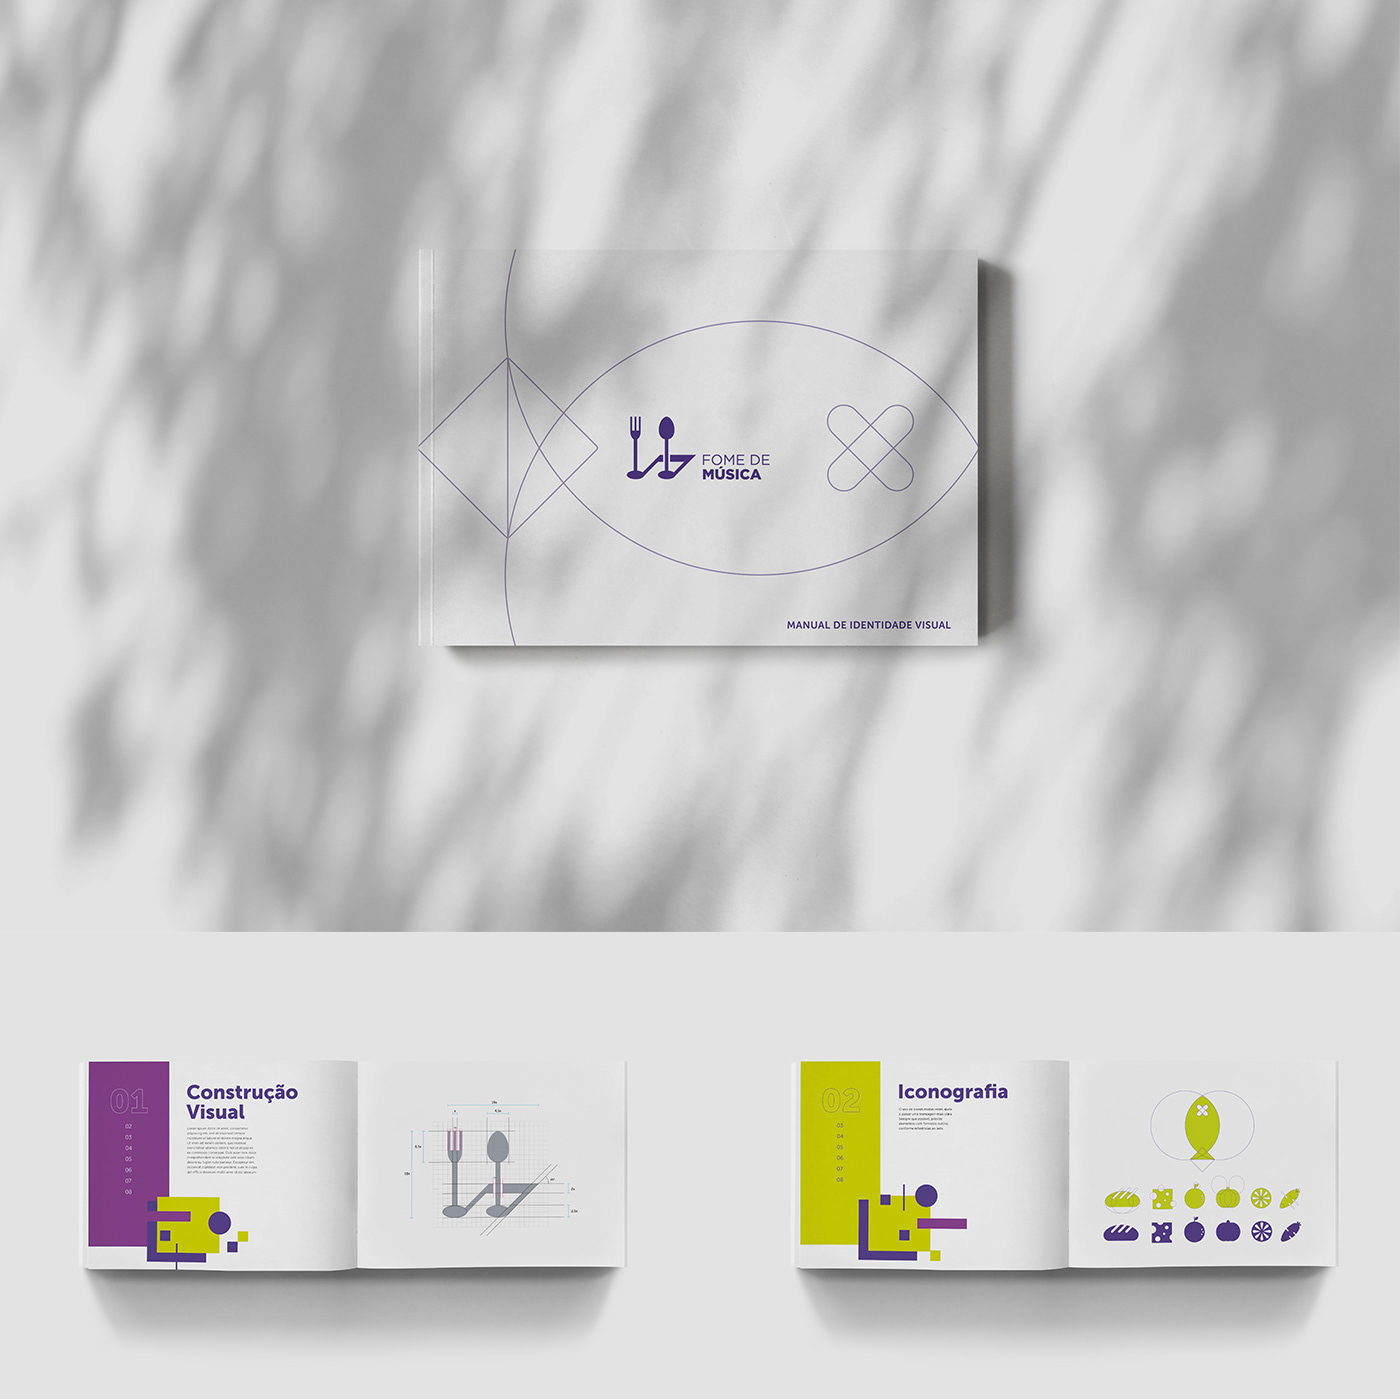 branding  fome de música graphic design  logo Logotype